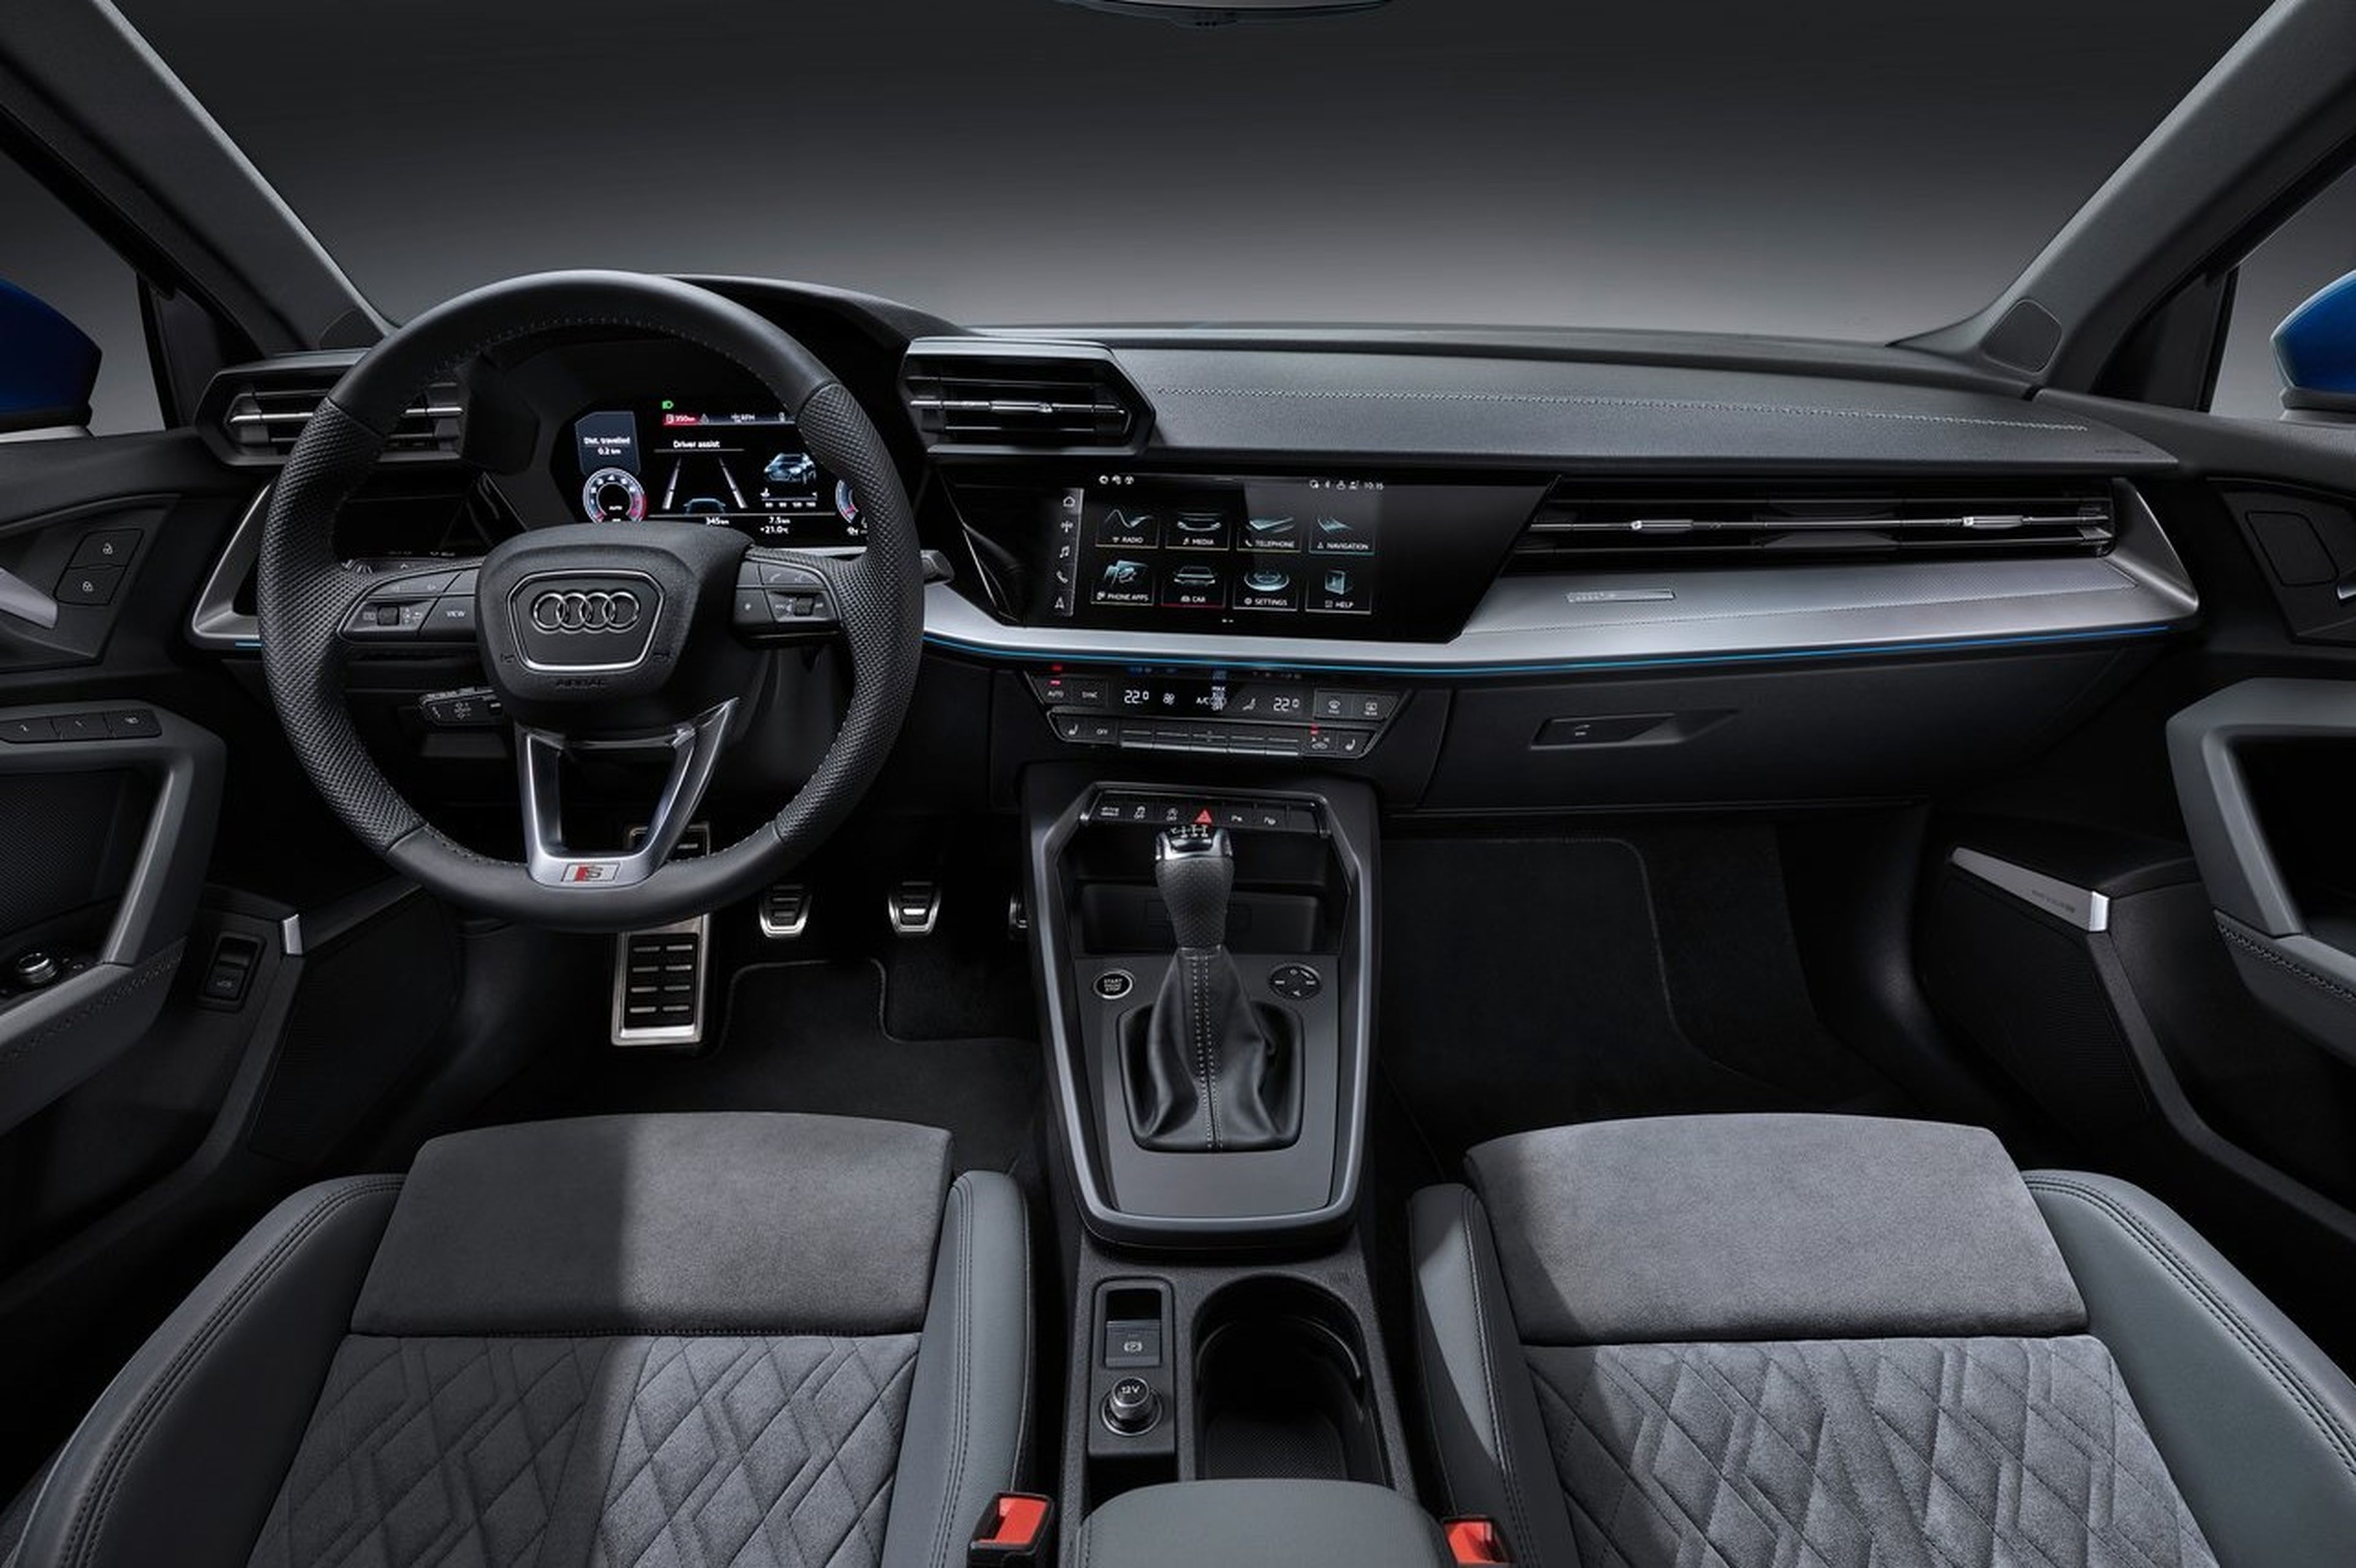 5 frikadas del Audi A3 que pocos conocen